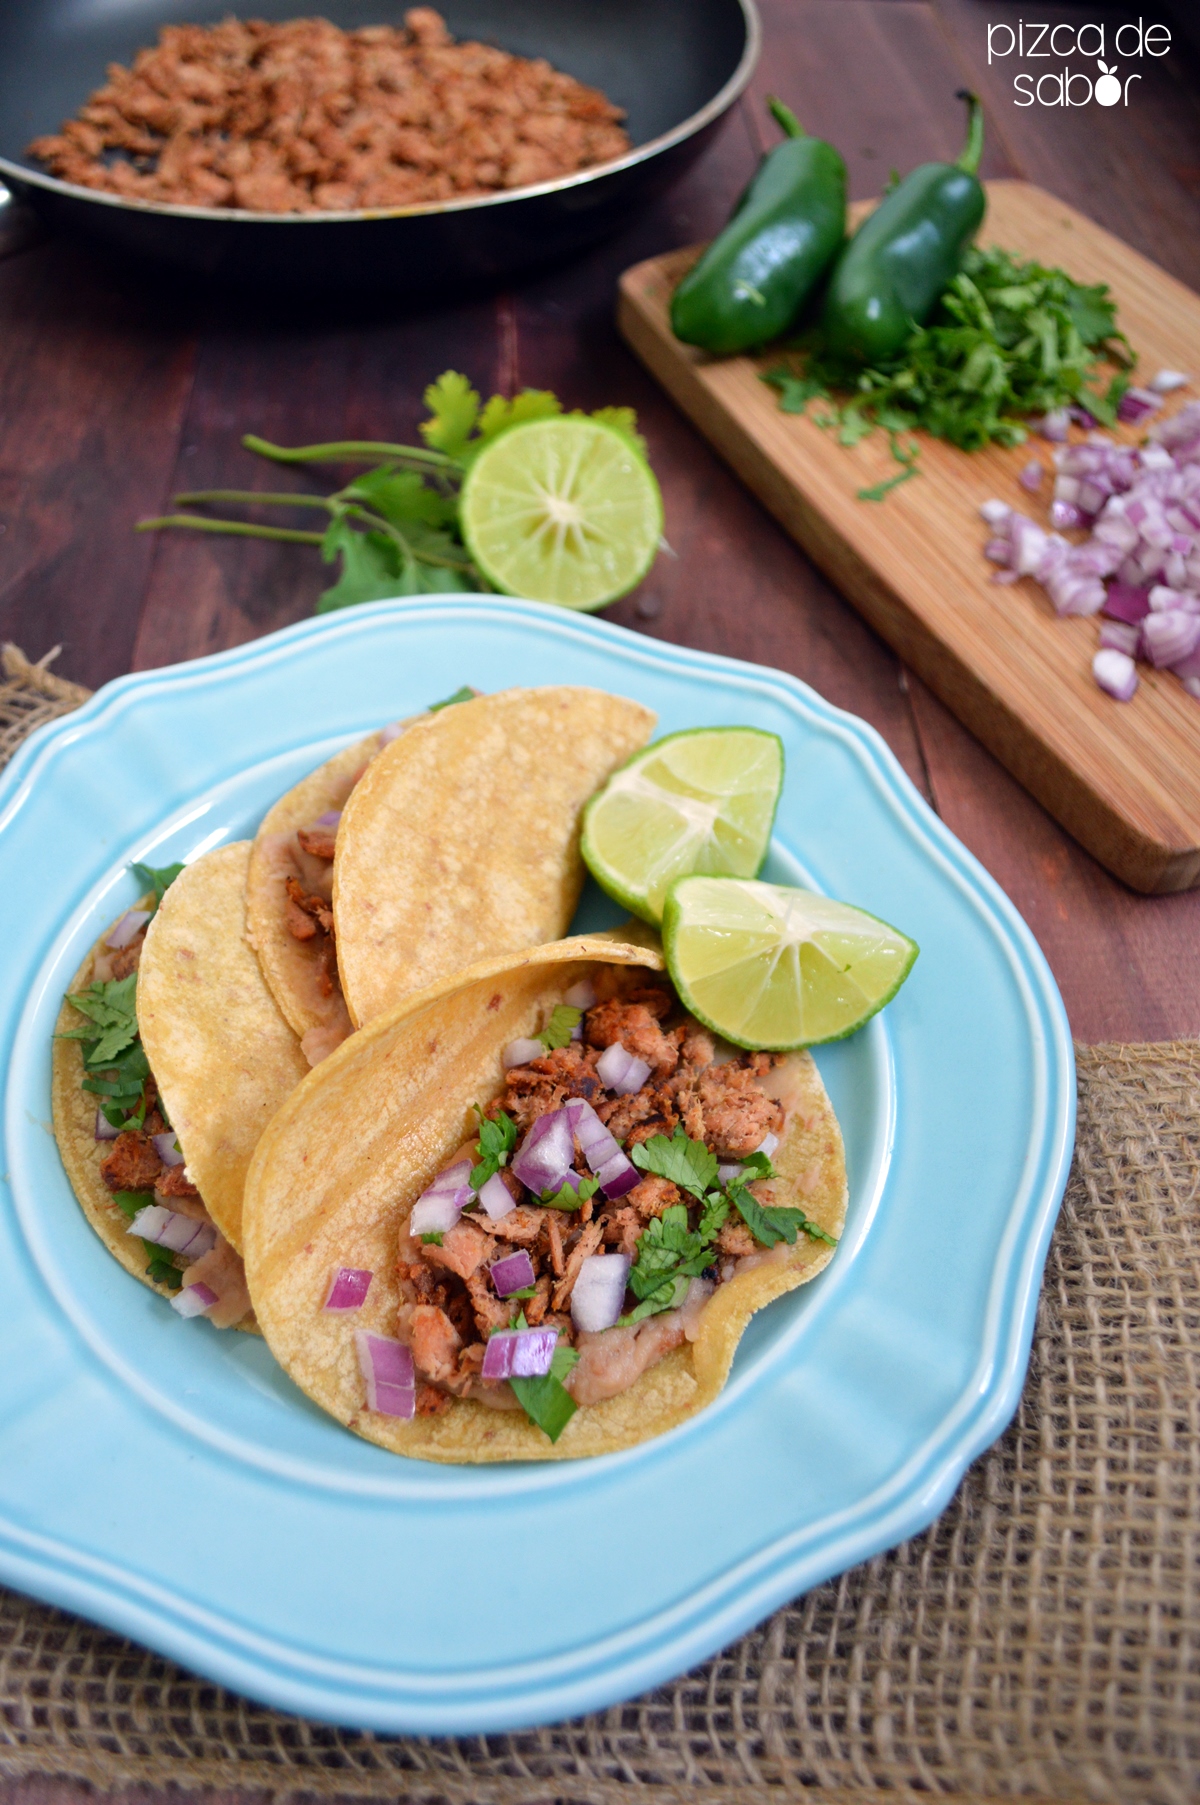 Tacos de carnitas de atún - Pizca de Sabor